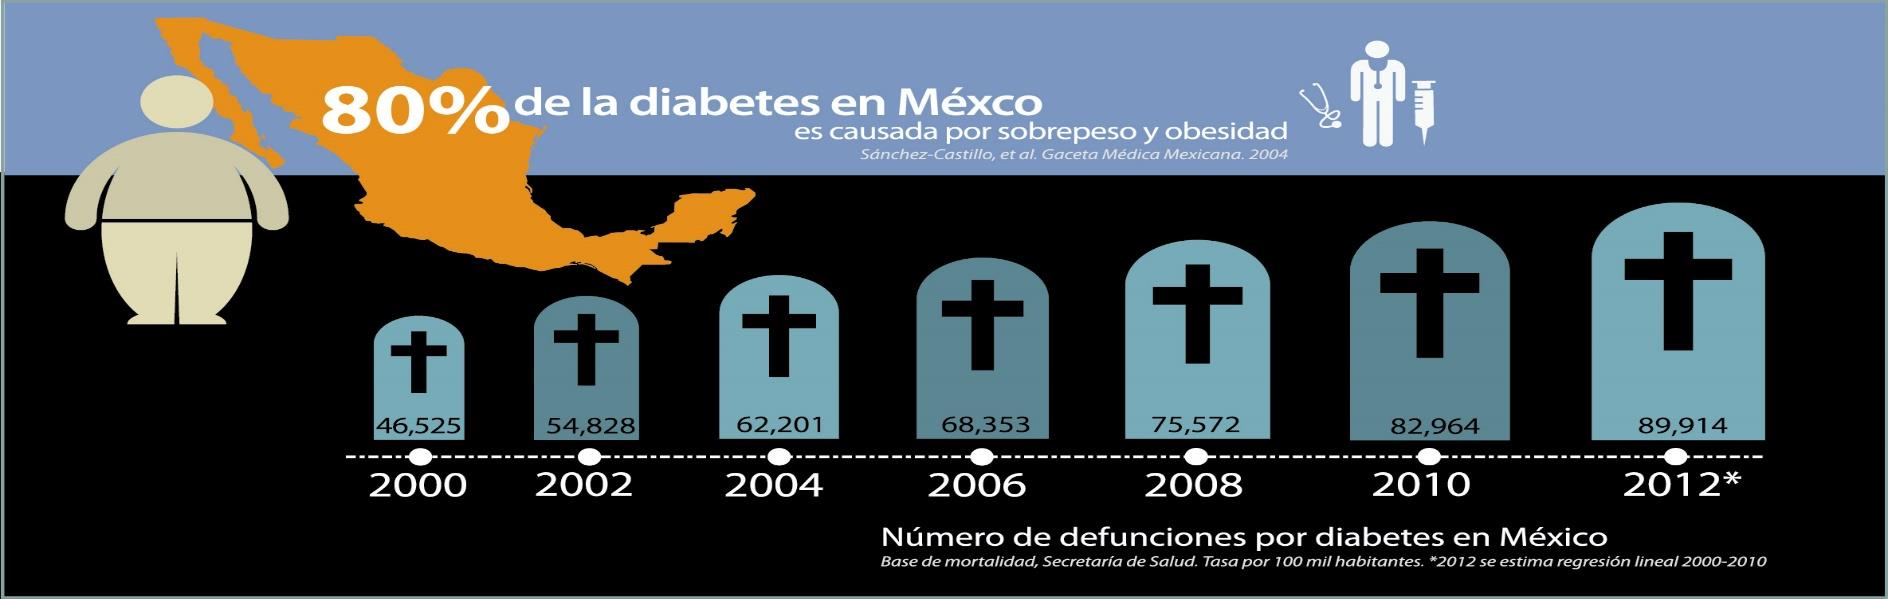 En México desde el año 2000, la Diabetes Mellitus es la primera causa de muerte entre las mujeres